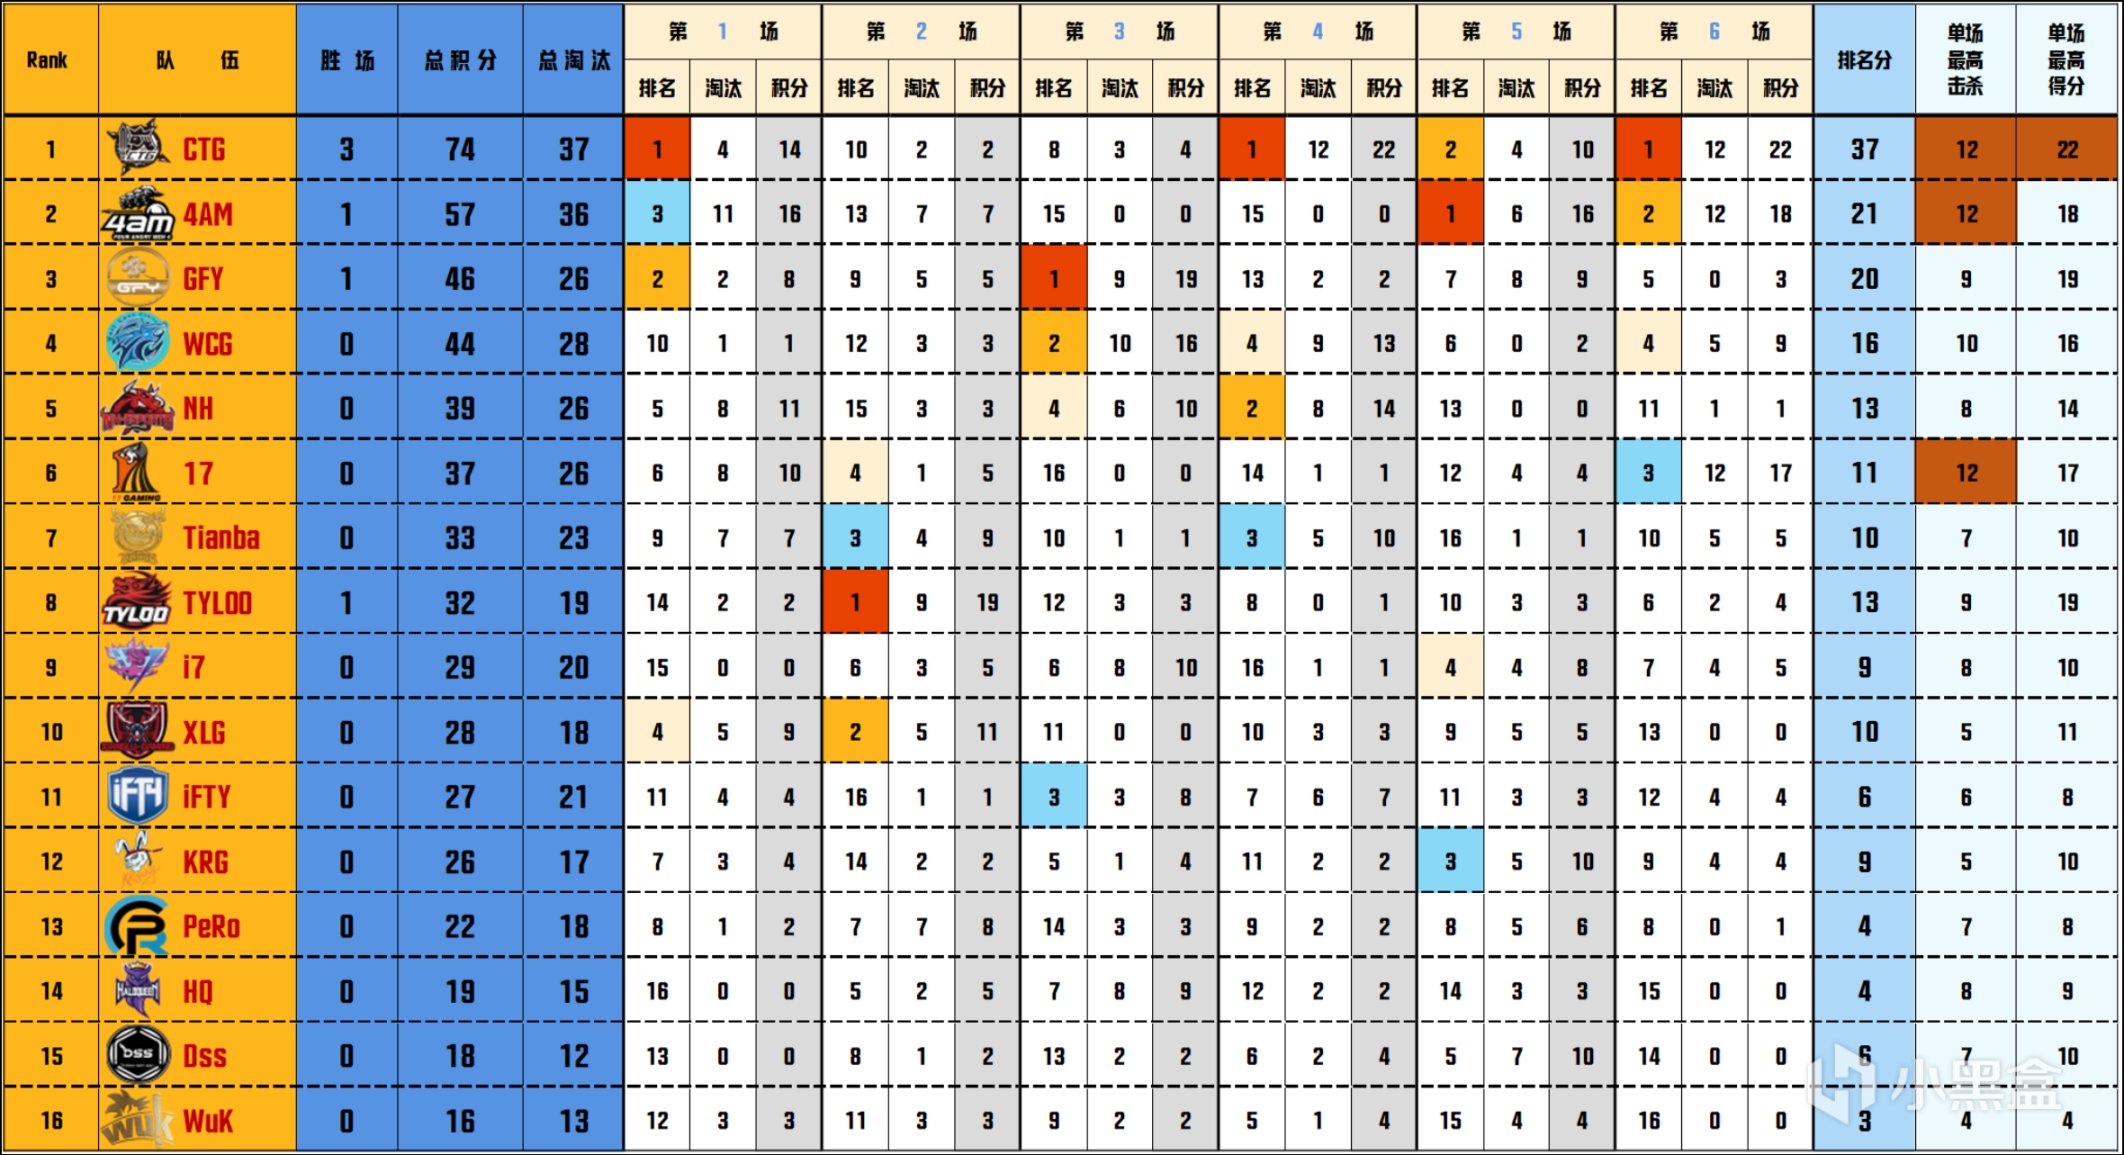 【数据流】PCL夏季赛W2D1,CTG 74分单日第一，LEG_Muu_GFY淘汰王14杀-第2张